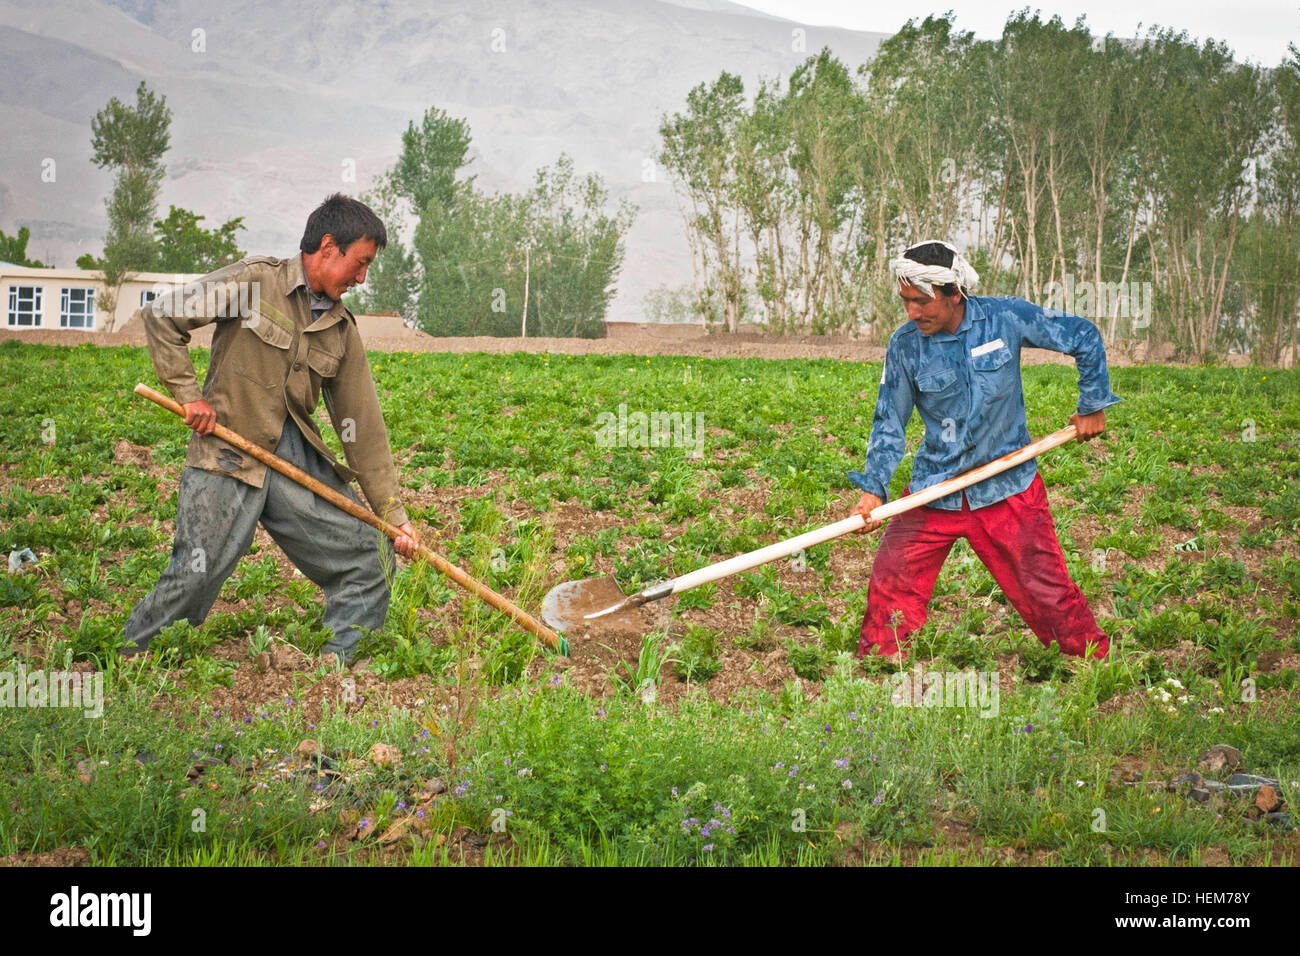 La provincia de Bamyan, Afganistán - Dos agricultores tienden a un campo de patatas, cerca de la ciudad de Bamyan el 16 de junio de 2012. Muchas de las explotaciones de la zona aún están sembradas y cosechadas enteramente a mano. El equipo provincial de reconstrucción de Bamyan ha estado luchando para sustituir estos tipos de técnicas agrícolas anticuadas con la mecanización (tractores) y otros adelantos modernos. Las papas se han convertido en el principal cultivo comercial de la provincia, aportando millones de dólares a su economía cada año. (Ee.Uu. Foto por sargento del ejército. Ken Cicatriz, móvil 7º destacamento de Asuntos Públicos) a los agricultores afganos en Bamyan-2 Foto de stock